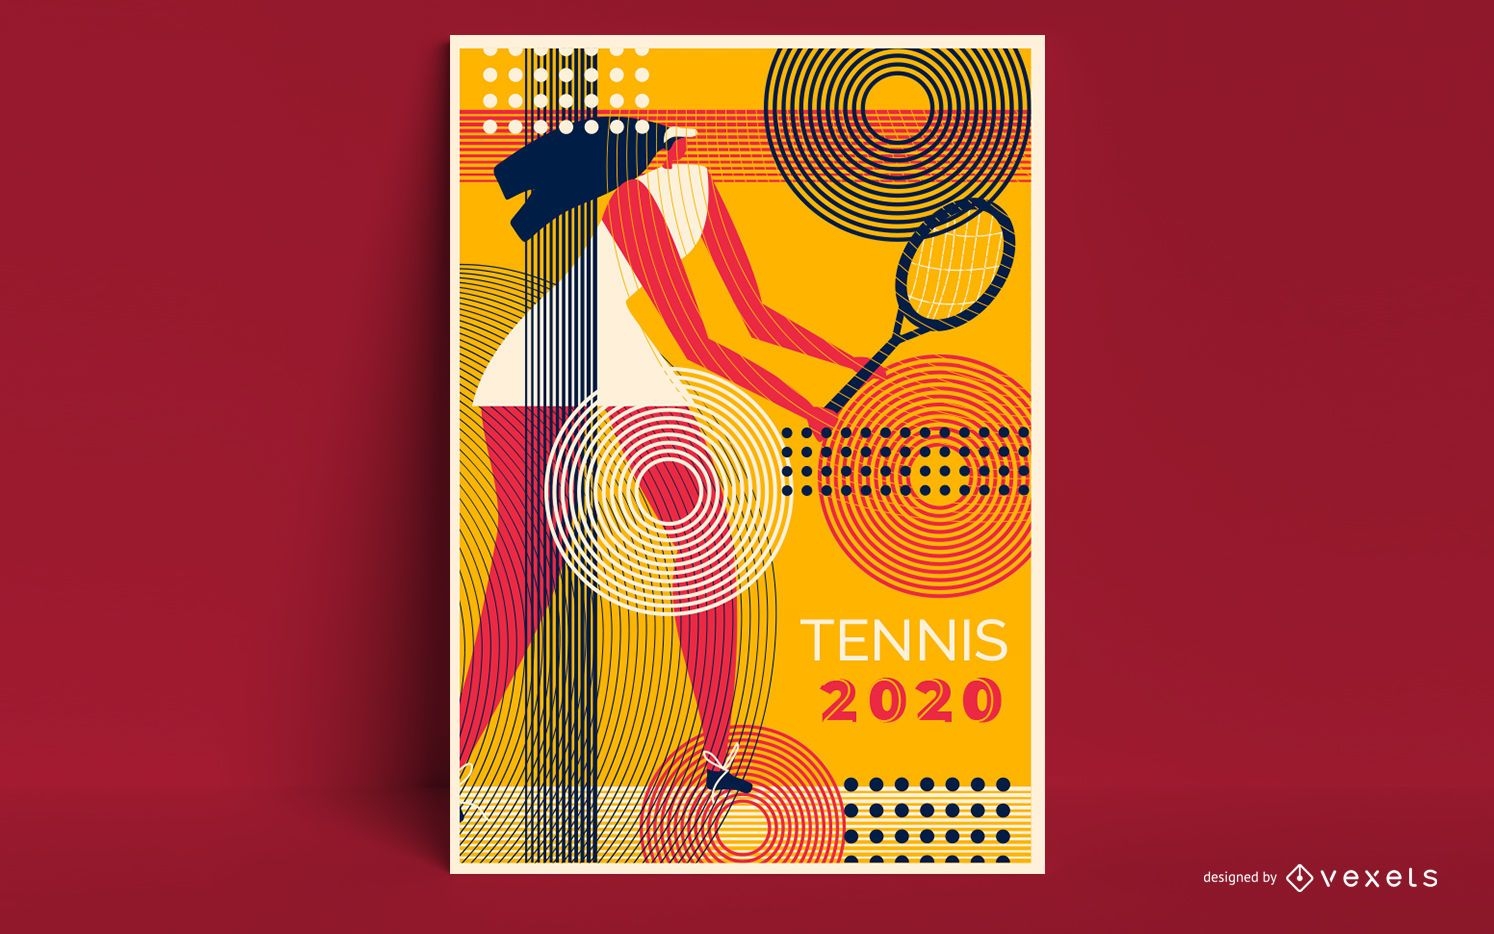 Tennisspieler-Poster-Design